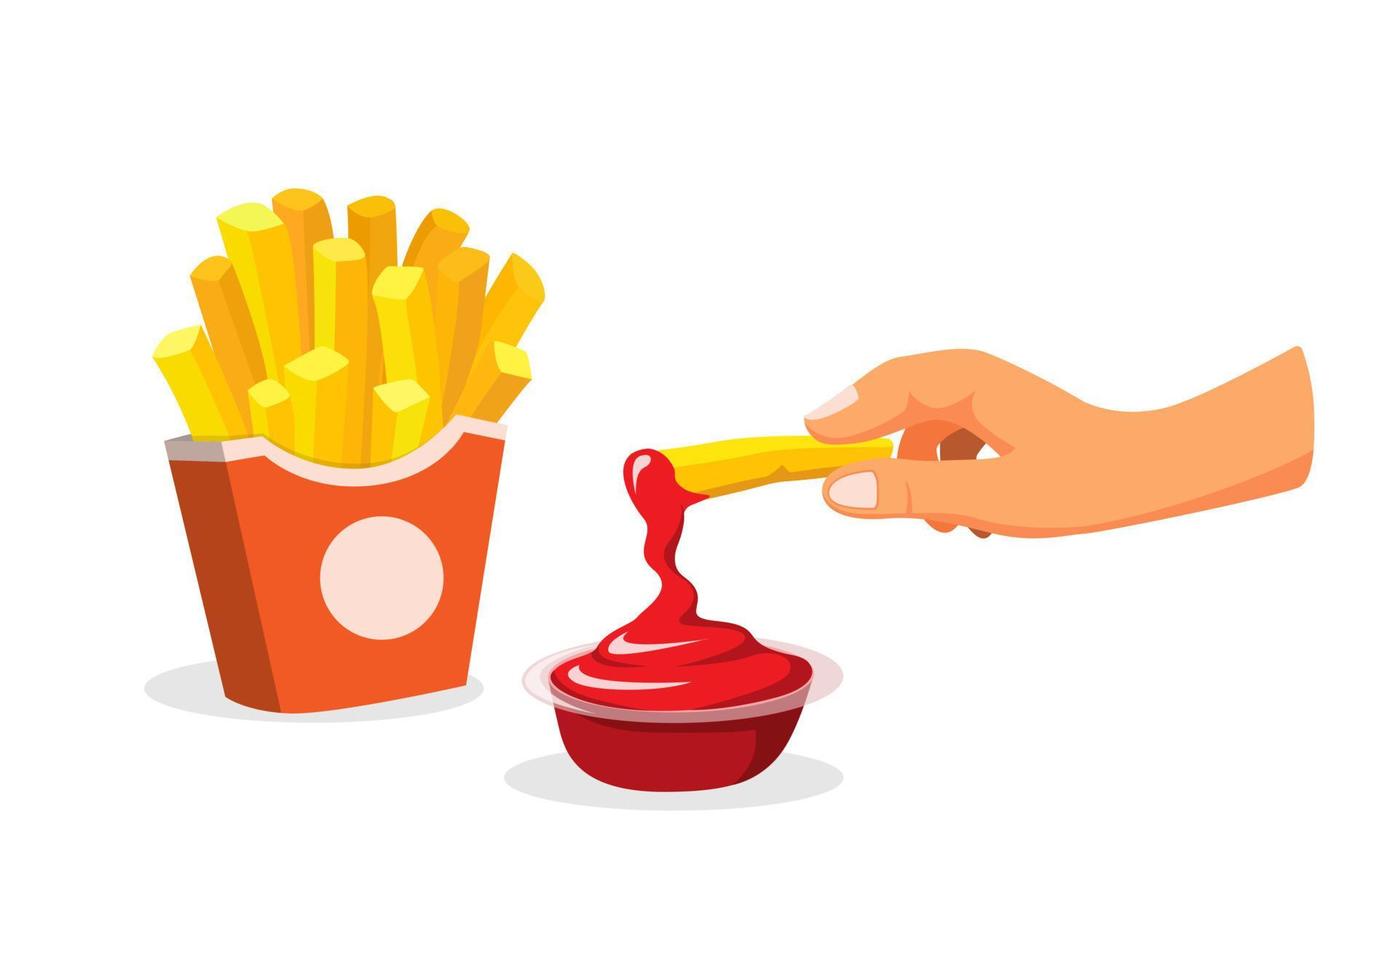 sumerja a mano las papas fritas en salsa de tomate. snack, papa, comida rápida, menú, símbolo, en, caricatura, ilustración, vector